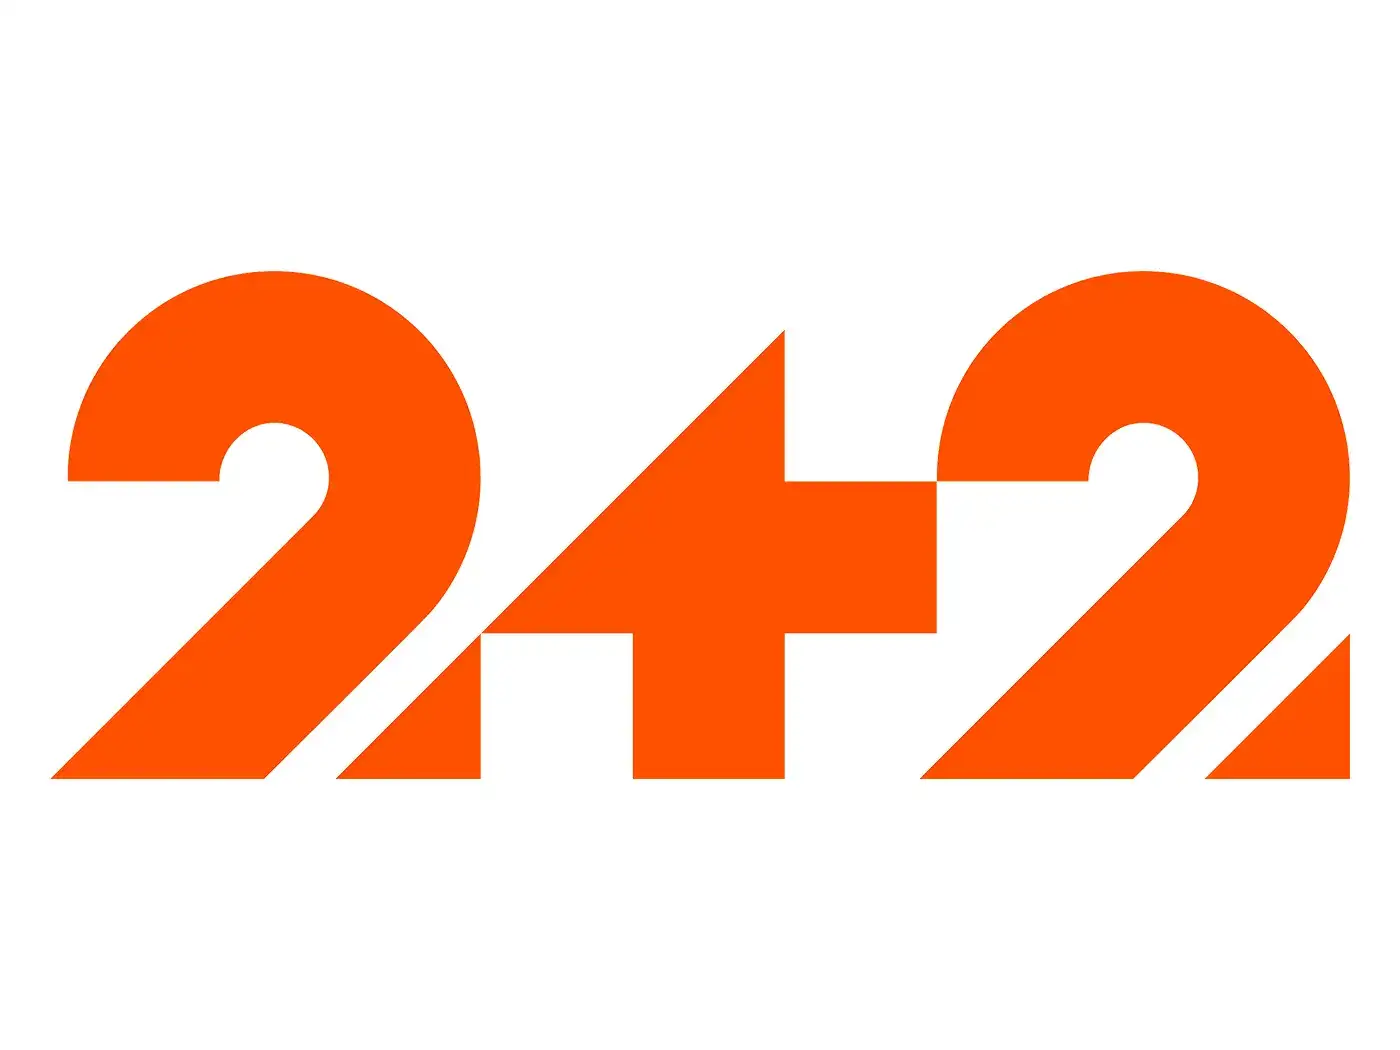 Тв 2 телефоны. 2 Плюс 2 Телеканал. 2+2 (Телеканал). 2×2 логотип. К2 (Телеканал).